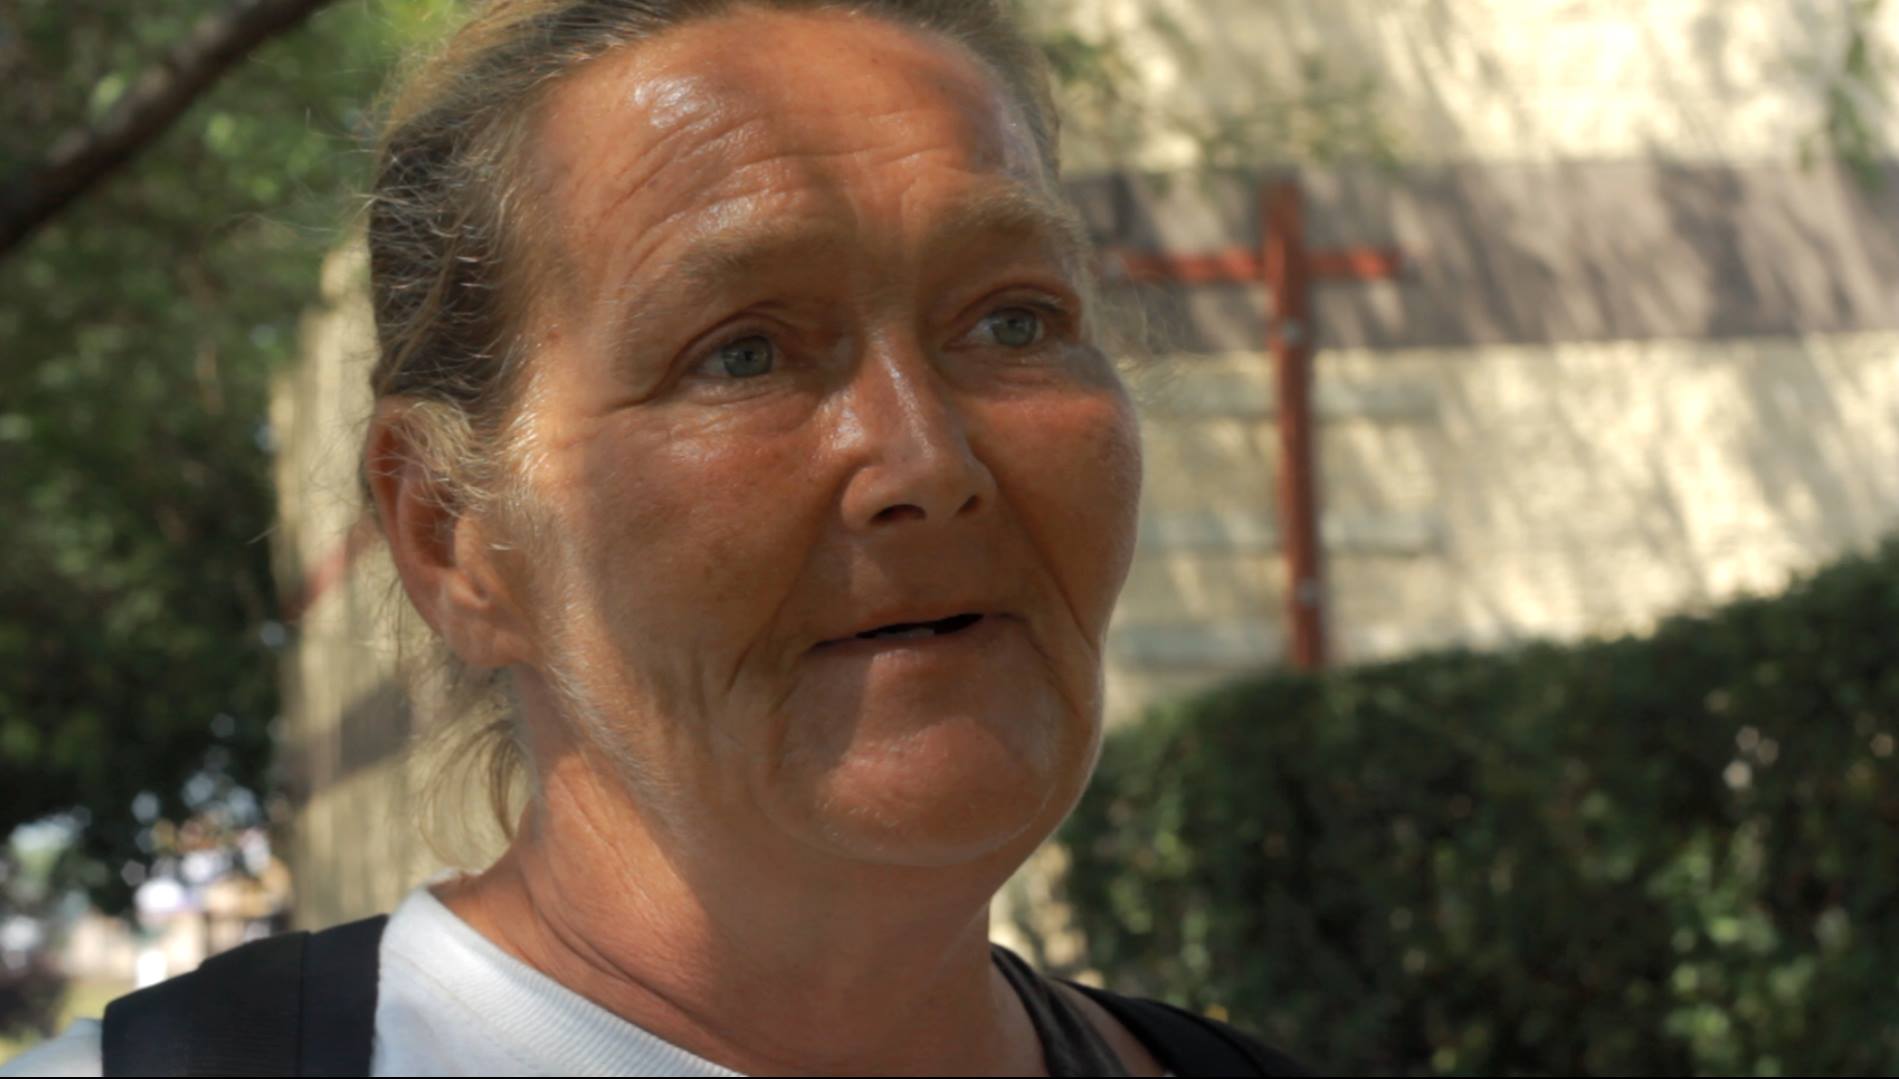 Teresa, 50, homeless in Chicago